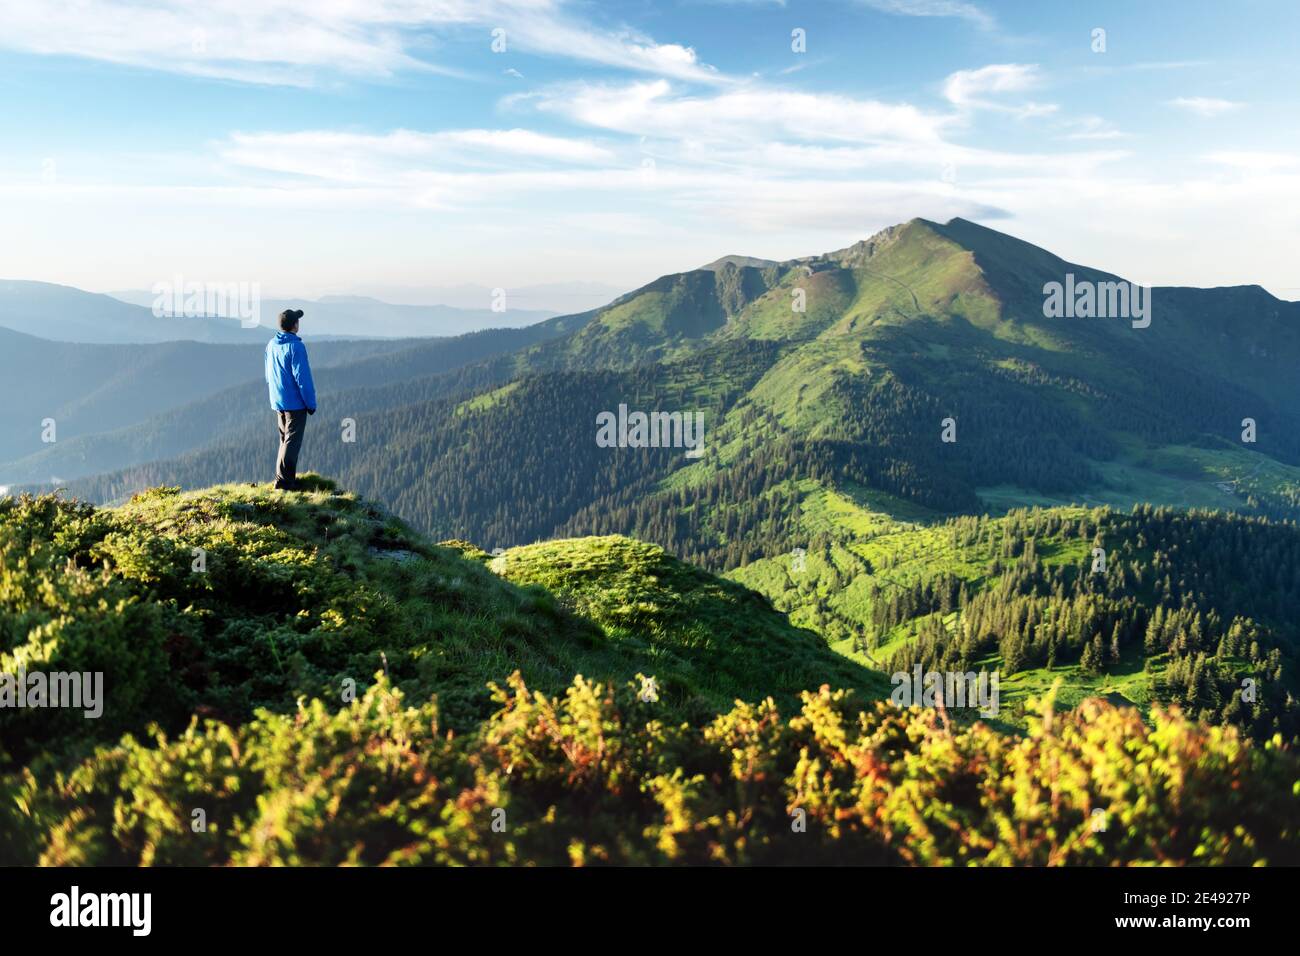 Un turista en el borde de una montaña cubierta de una hierba exuberante. Cielo azul nublado y montañas altas en el fondo. Fotografía de paisajes Foto de stock